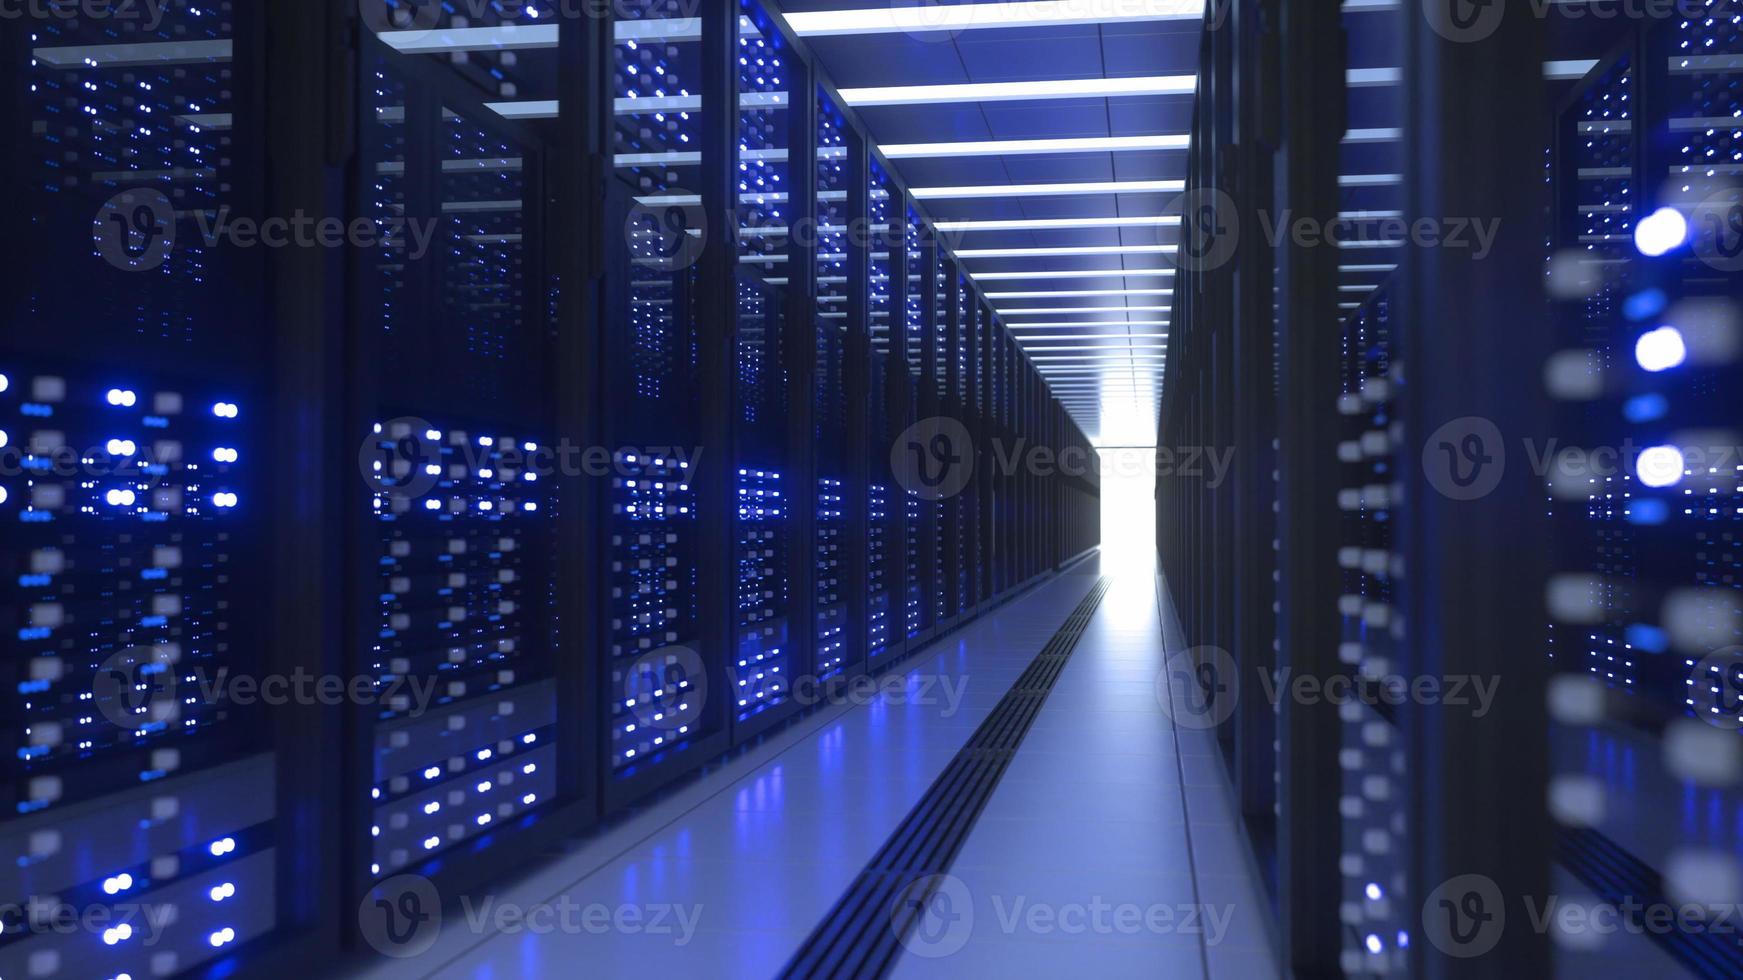 data Centrum dator kuggstänger i nätverk säkerhet server rum kryptovaluta brytning foto